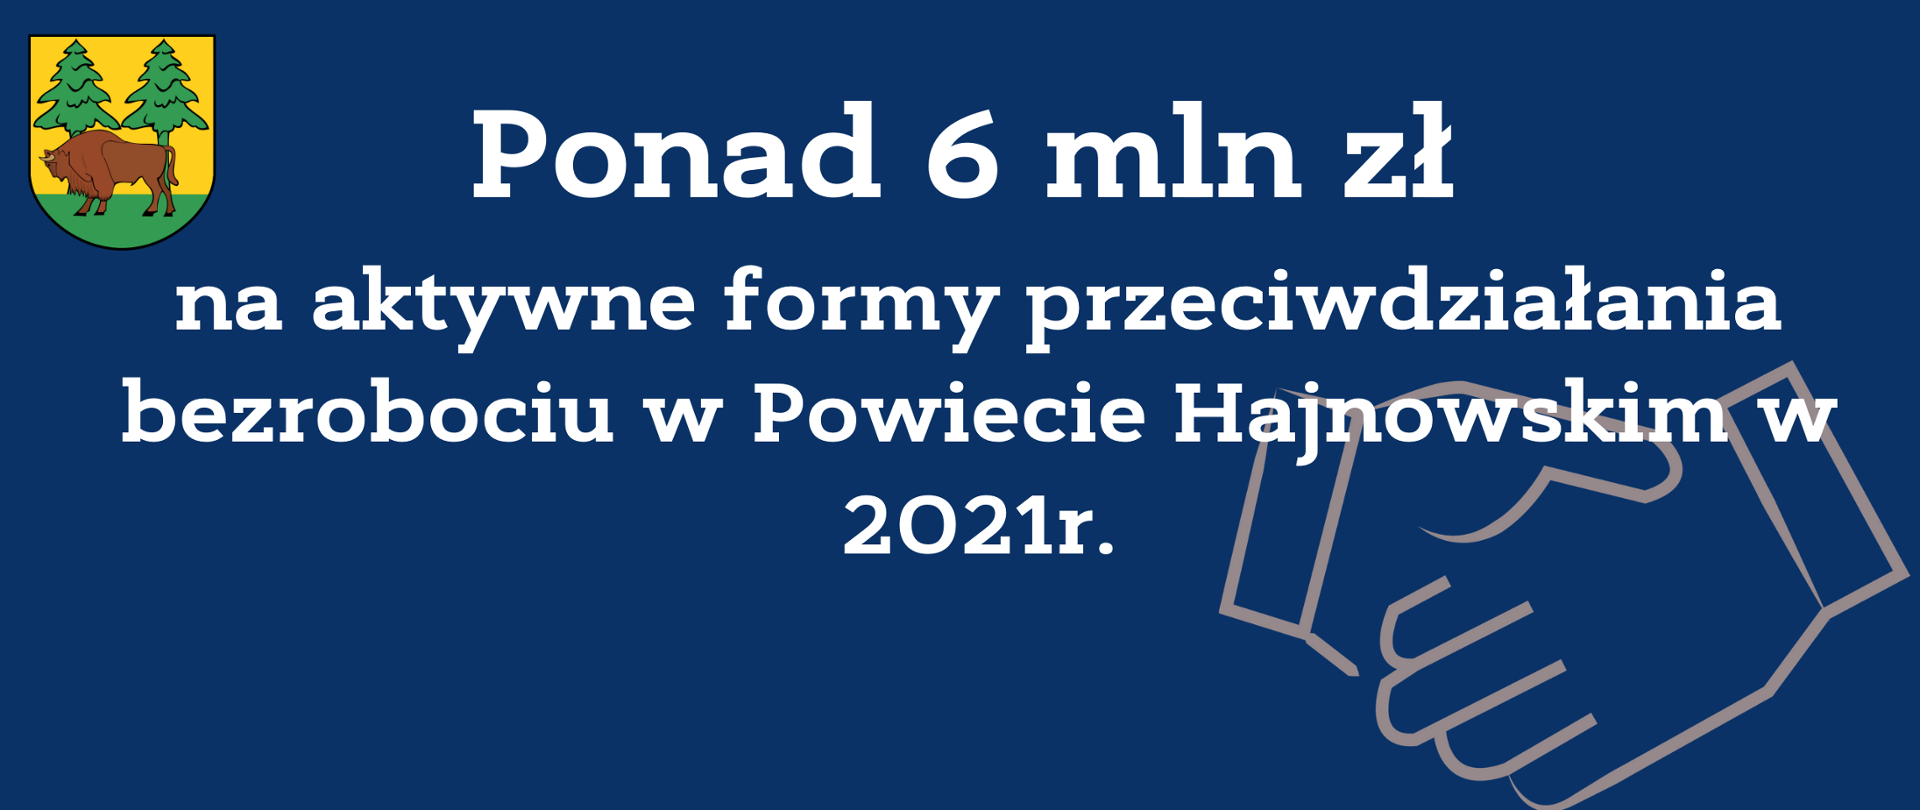 Ponad 6 mln zł na aktywne formy przeciwdziałania bezrobociu w Powiecie Hajnowskim w 2021 r.